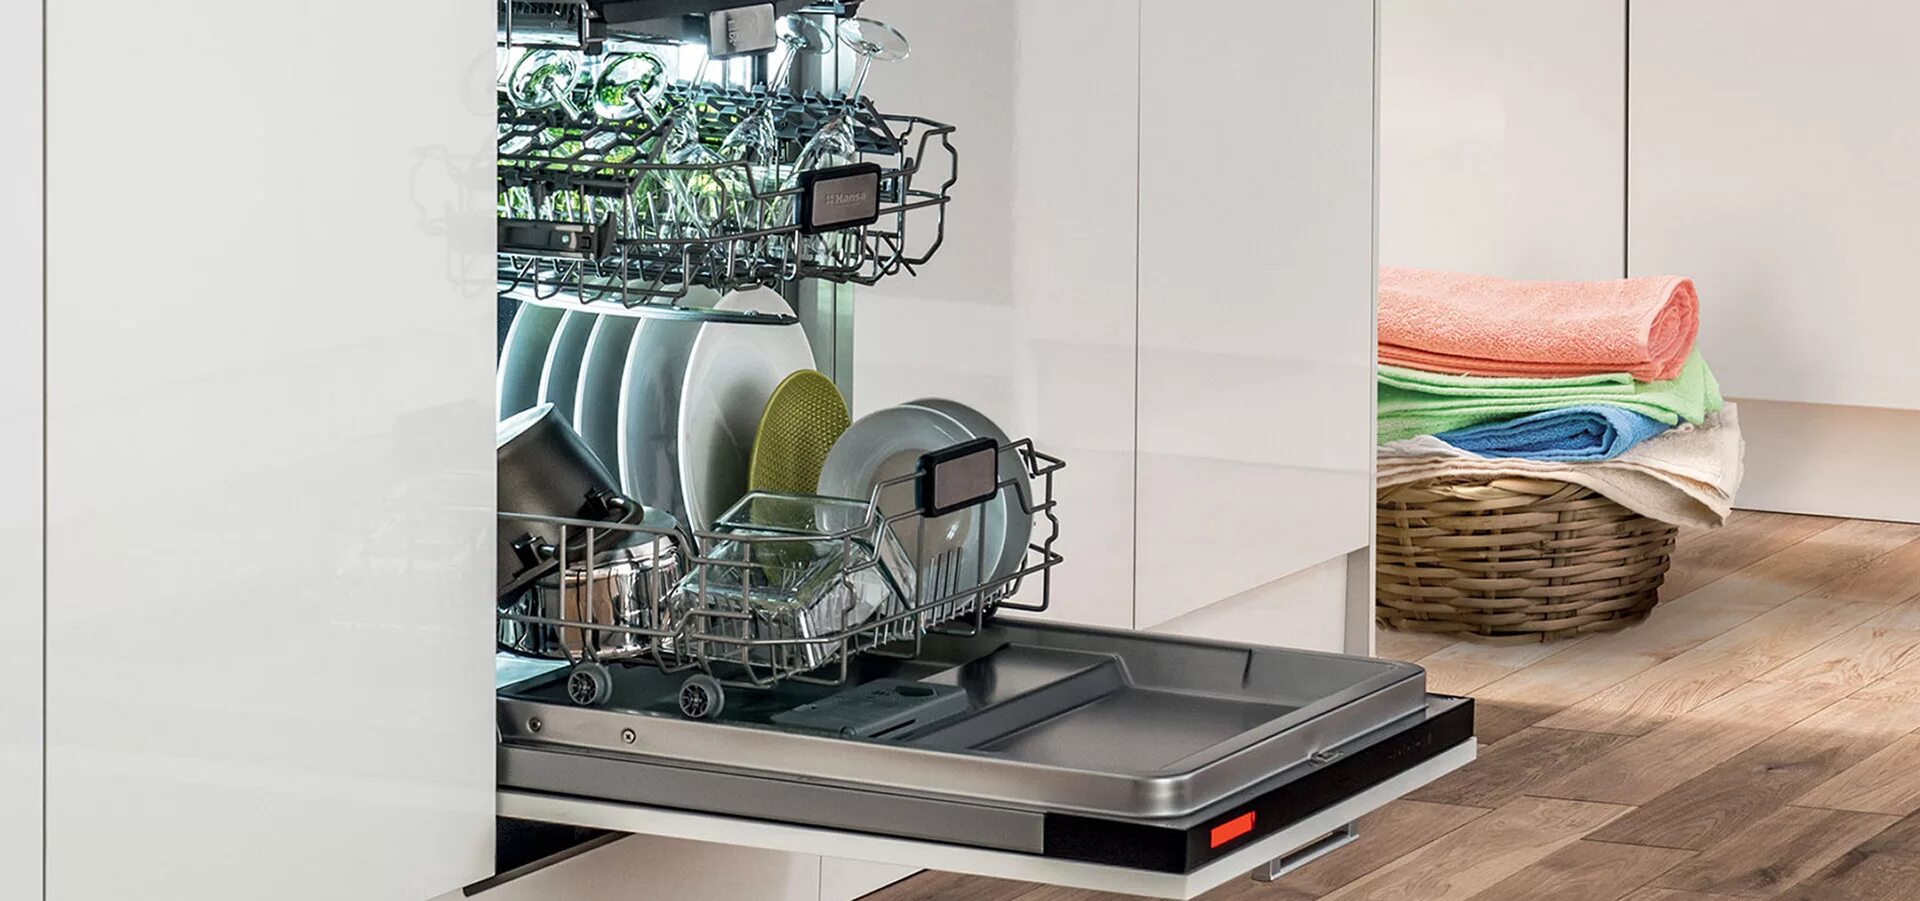 Посудомоечная машина 45 см рейтинг 2023. Neff посудомоечная машина 45 встраиваемая. Отдельностоящая посудомоечная машина Bosch SPS 2ikw3cr. Посудомоечная машина Kuppersbusch g 4800.1 v. Посудомоечная машина Ханса.